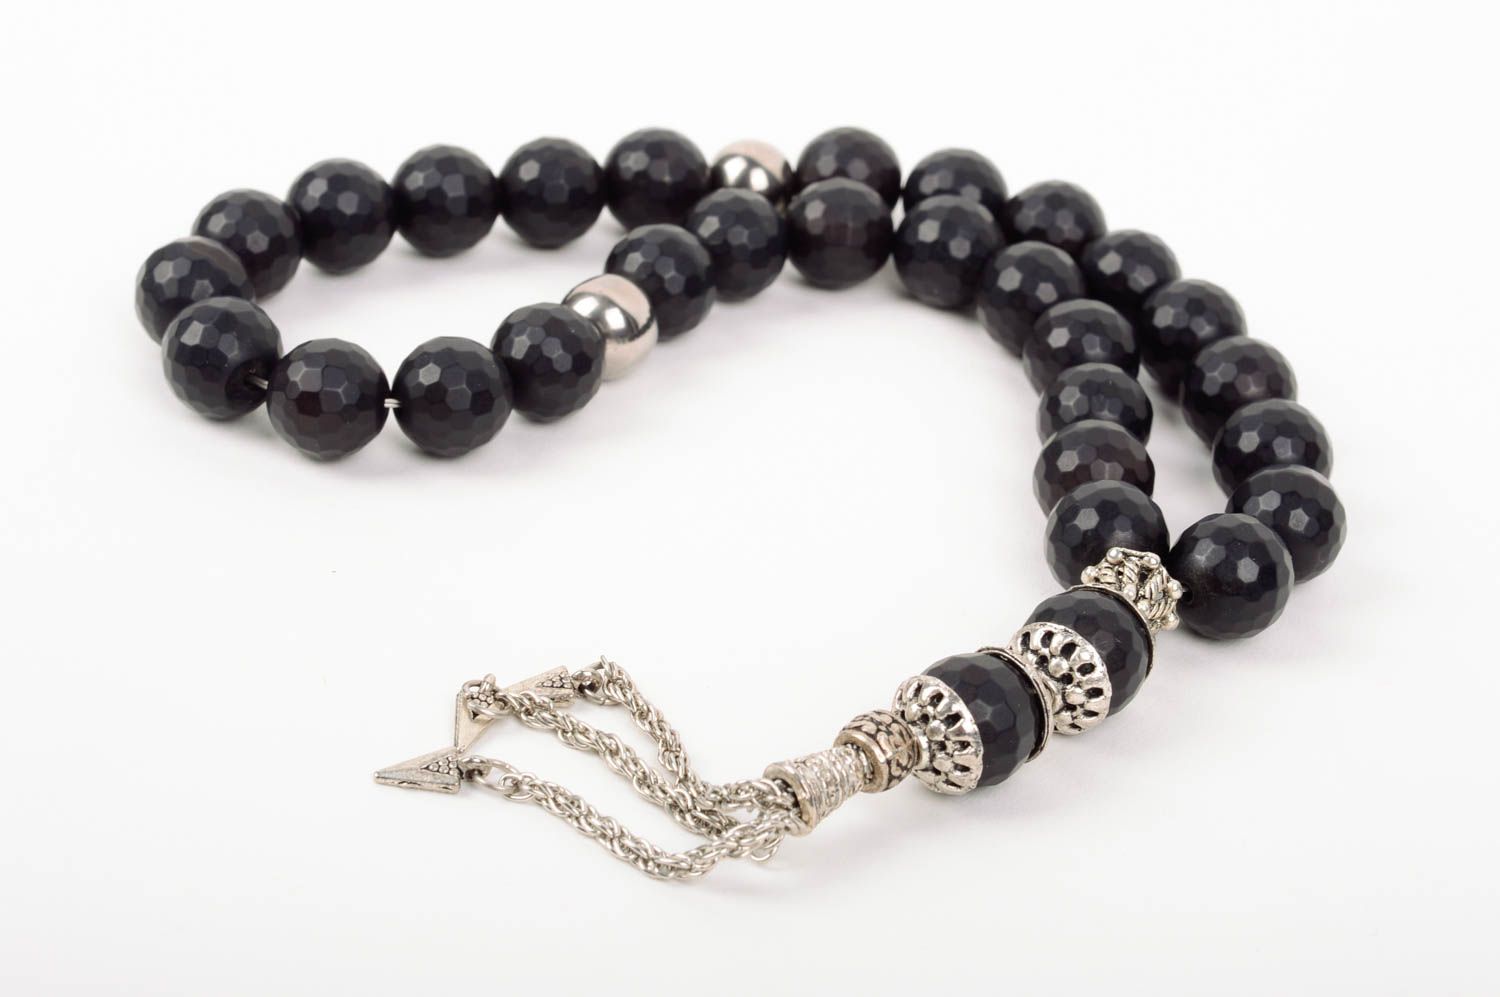 Rosary beads handmade prayer rope church accessories spiritual gifts worry beads photo 1